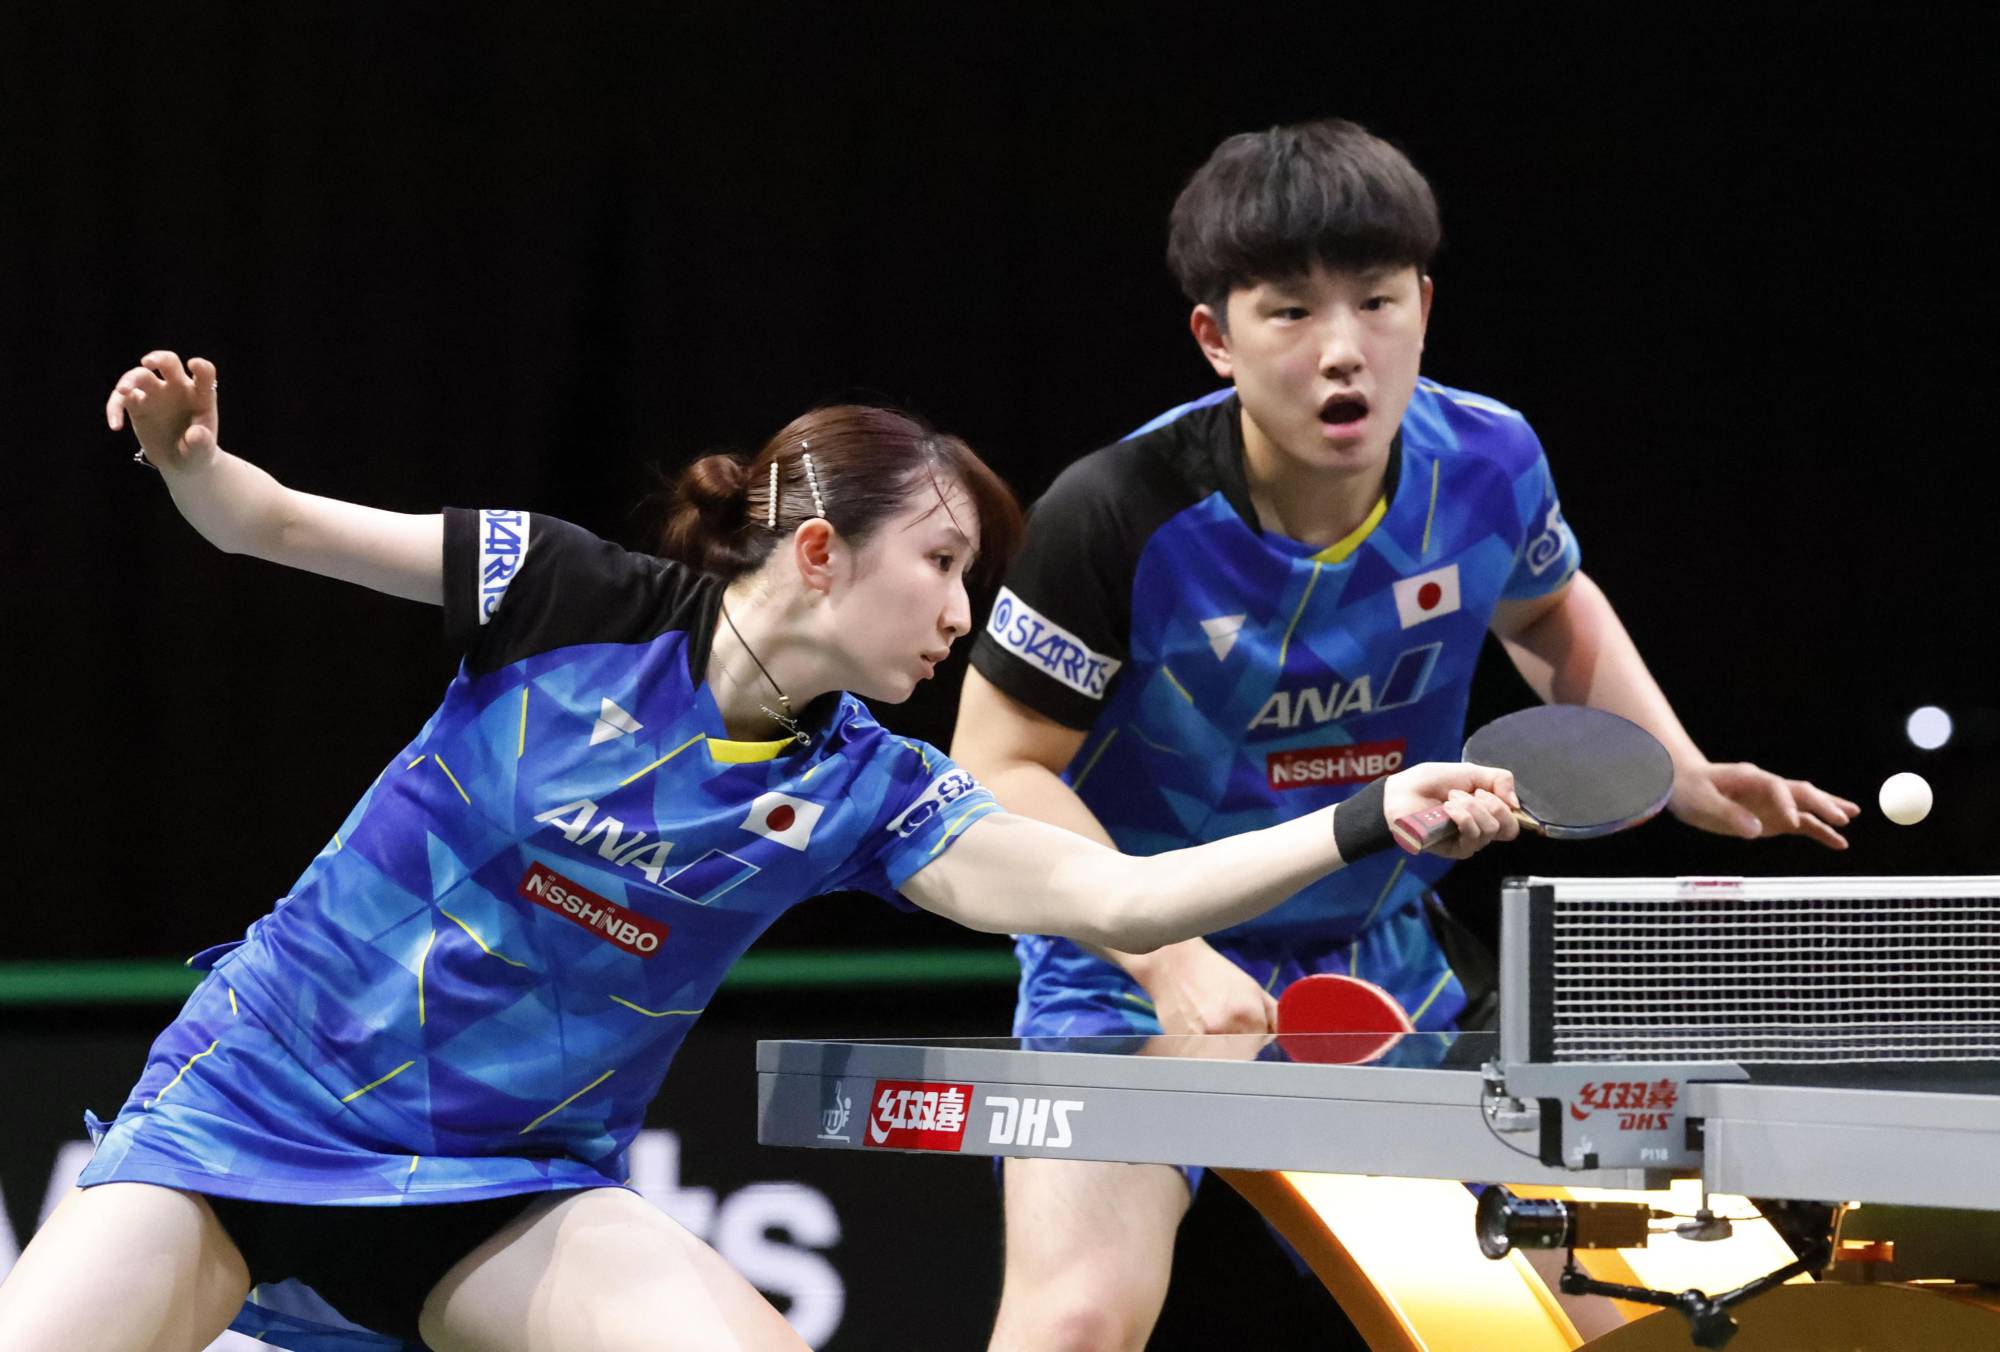 Tomokazu Harimoto and Hina Hayata reach mixed doubles final at world championships